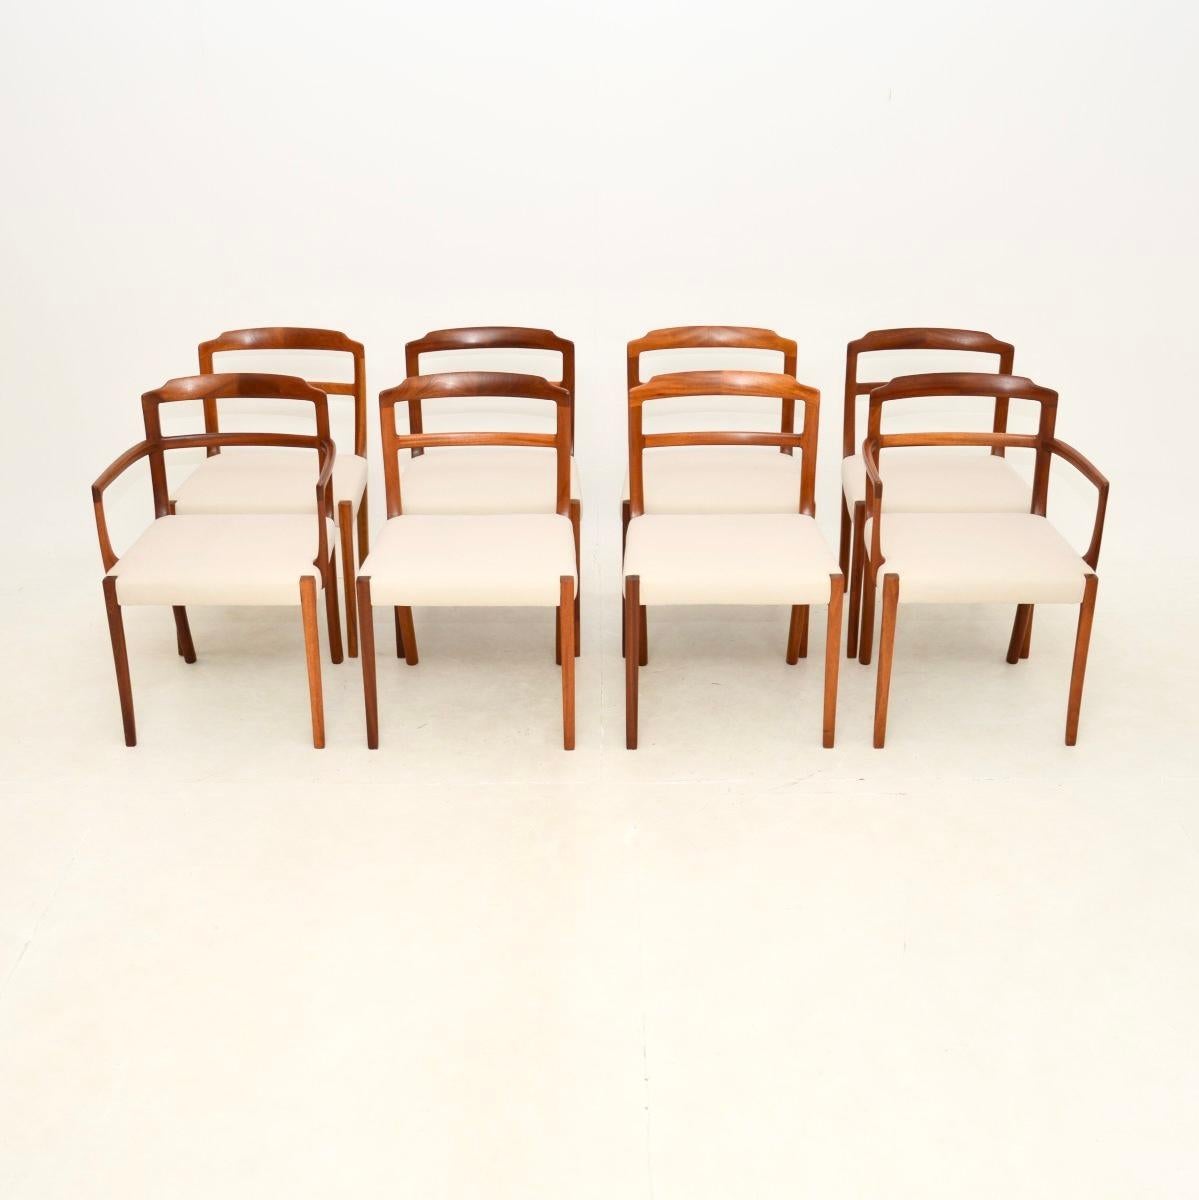 Ein atemberaubender Satz von acht dänischen Vintage-Esszimmerstühlen von Ole Wanscher. Sie wurden vor kurzem aus Dänemark importiert, sie stammen aus den 1960er Jahren.

Sie sind von hervorragender Qualität und haben ein feines, skulpturales Design.